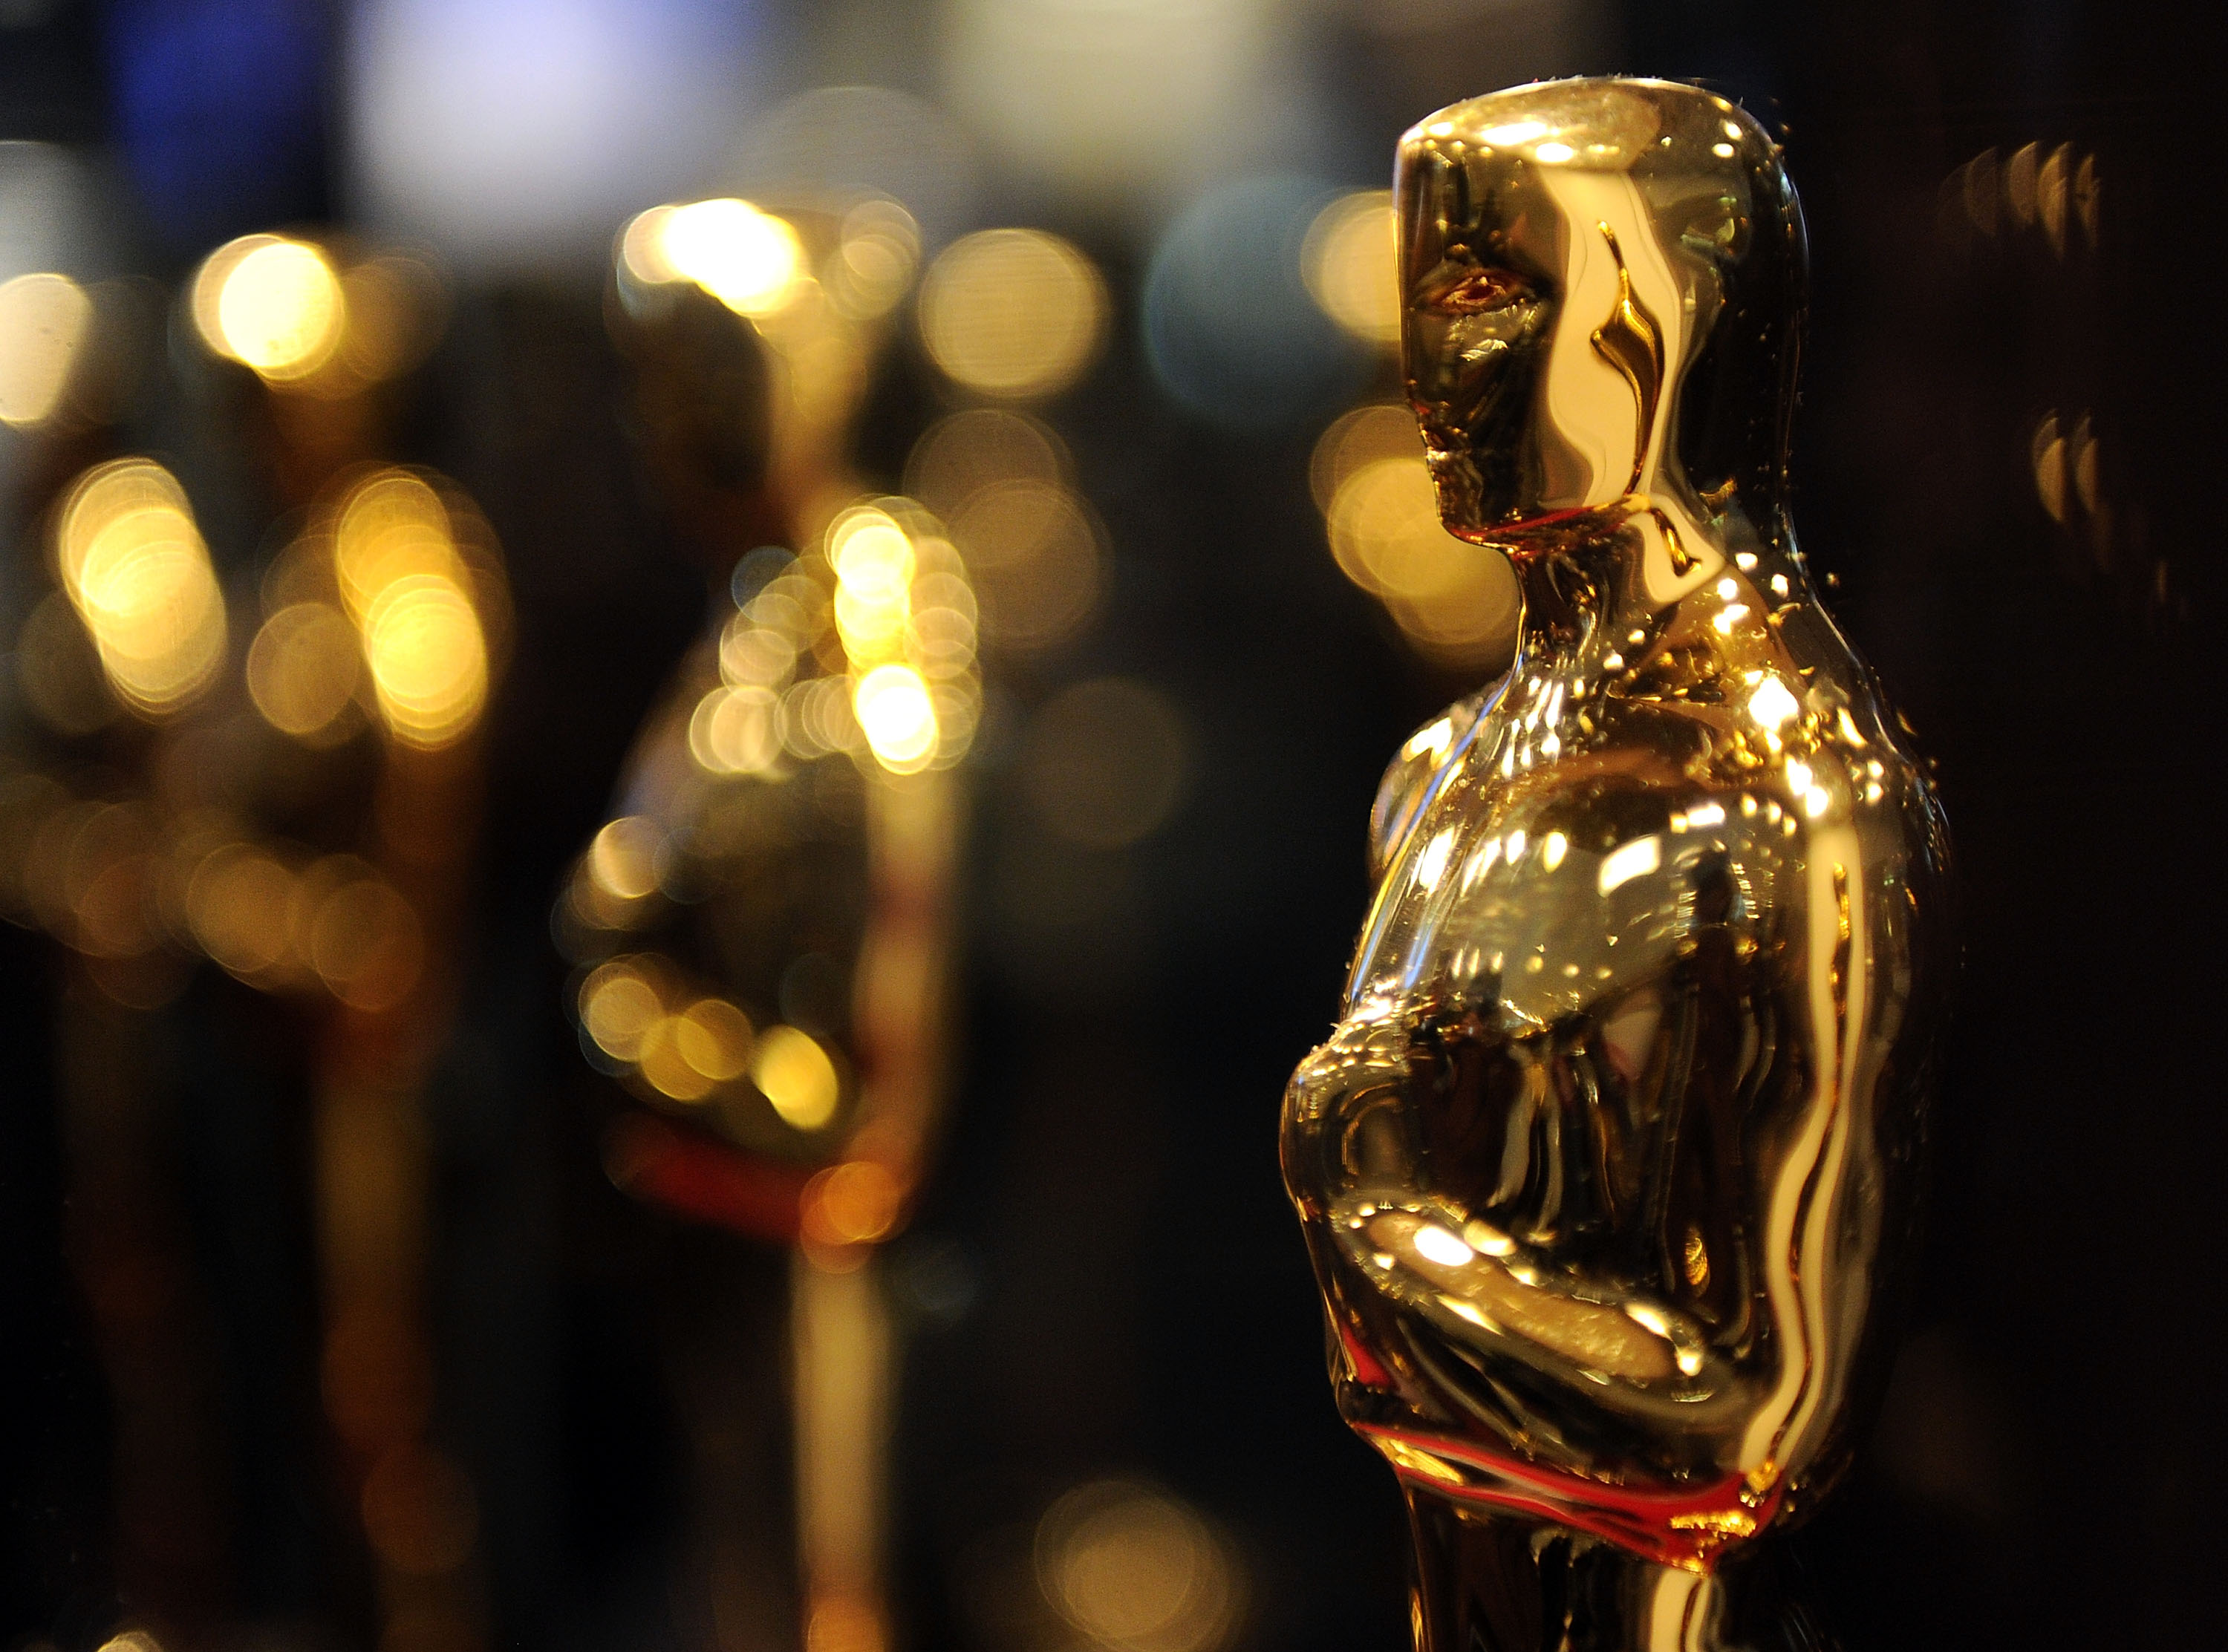 82nd Annual Academy Awards - “Meet The Oscars” New York